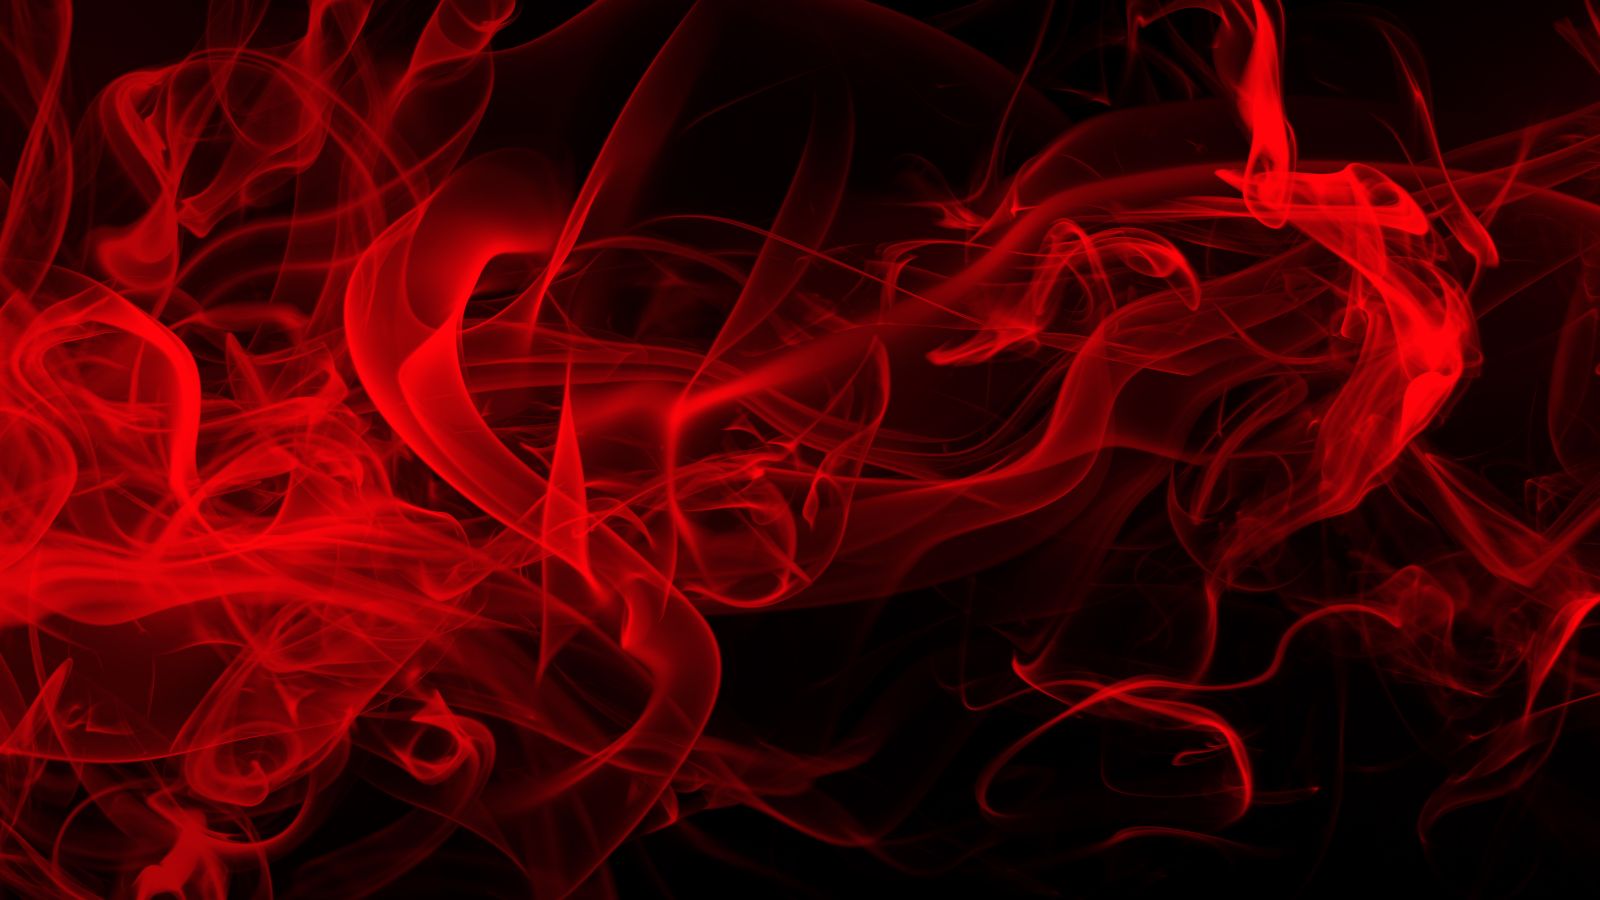 Das Bild zeigt roten Rauch vor schwarzem Hintergrund.